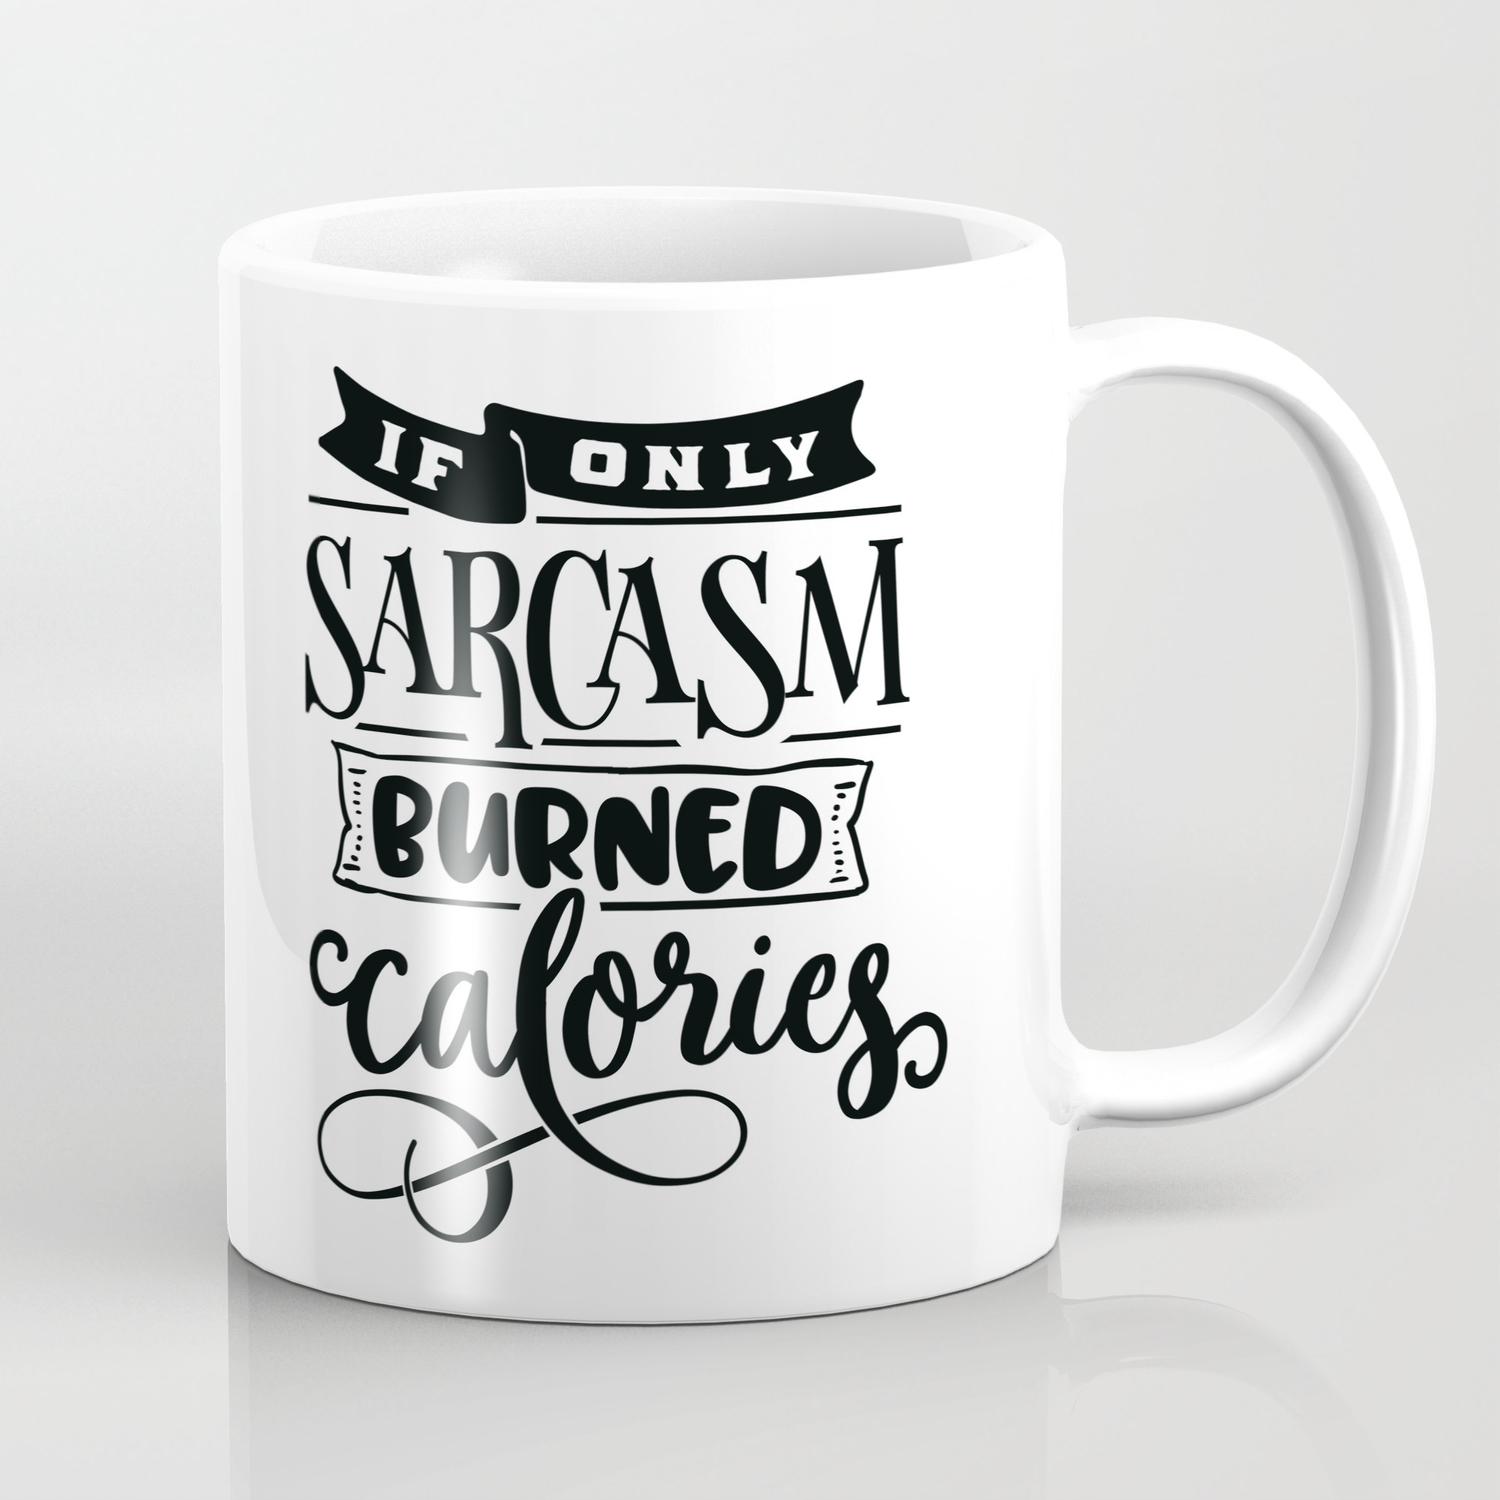 If Only Sarcasm Burned Calories Mug Coffee Mug Funny Mug Sarcastic Gift